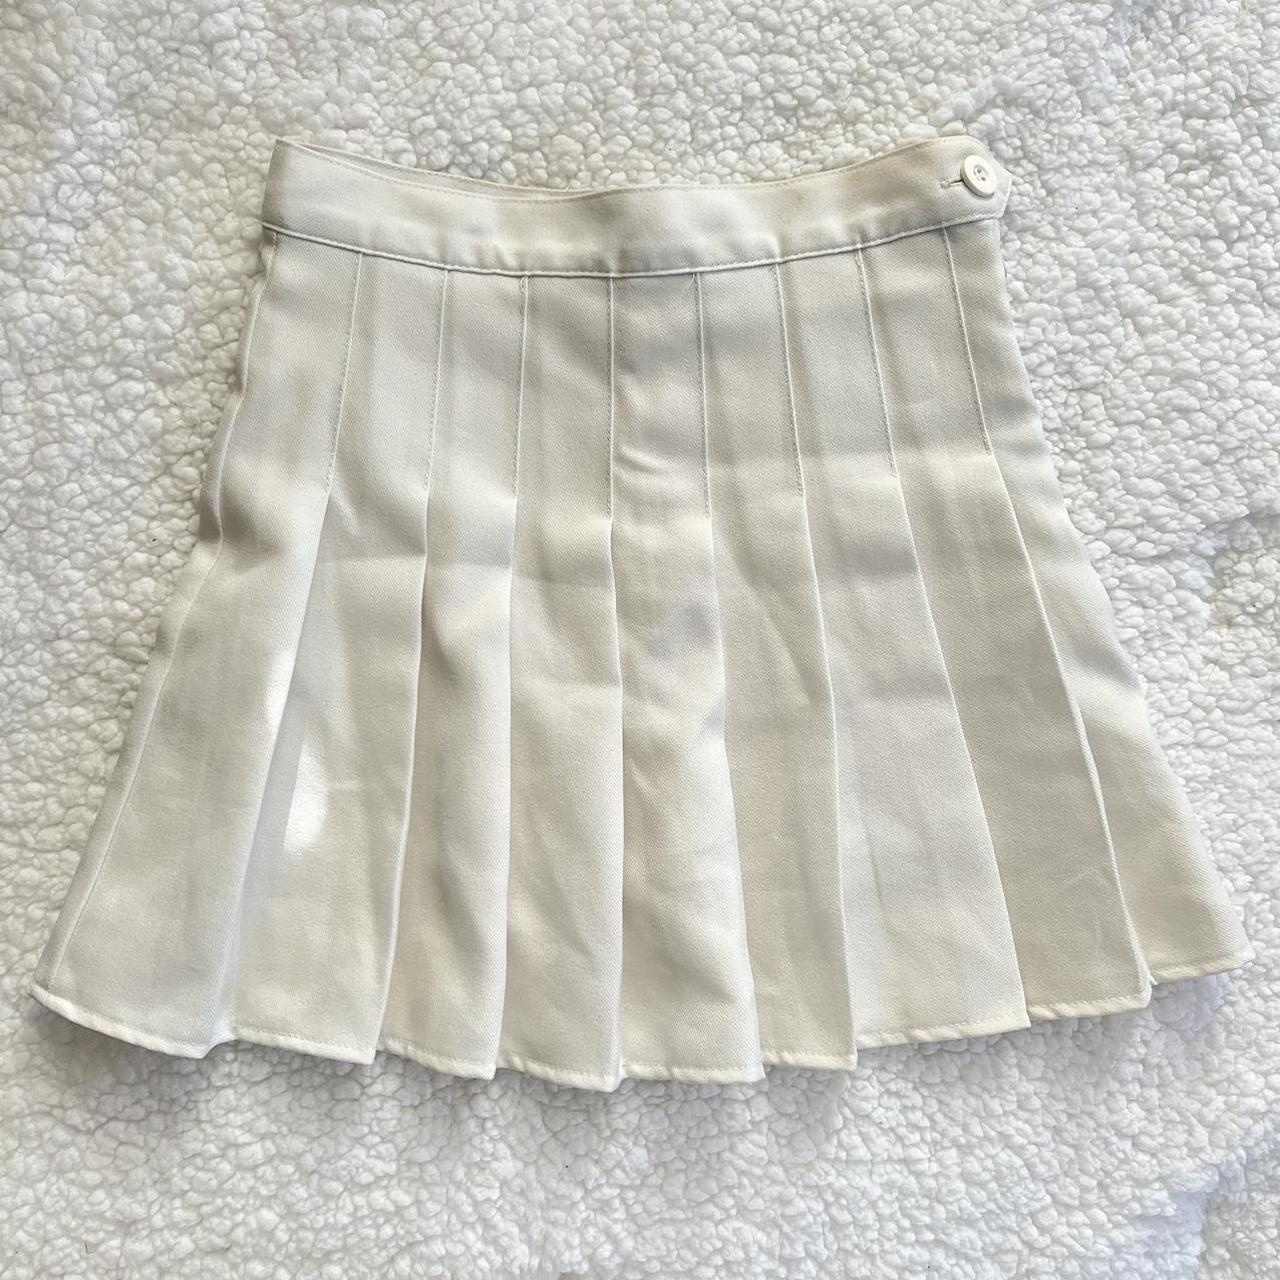 Stylenanda Women's White and Pink Skirt (3)